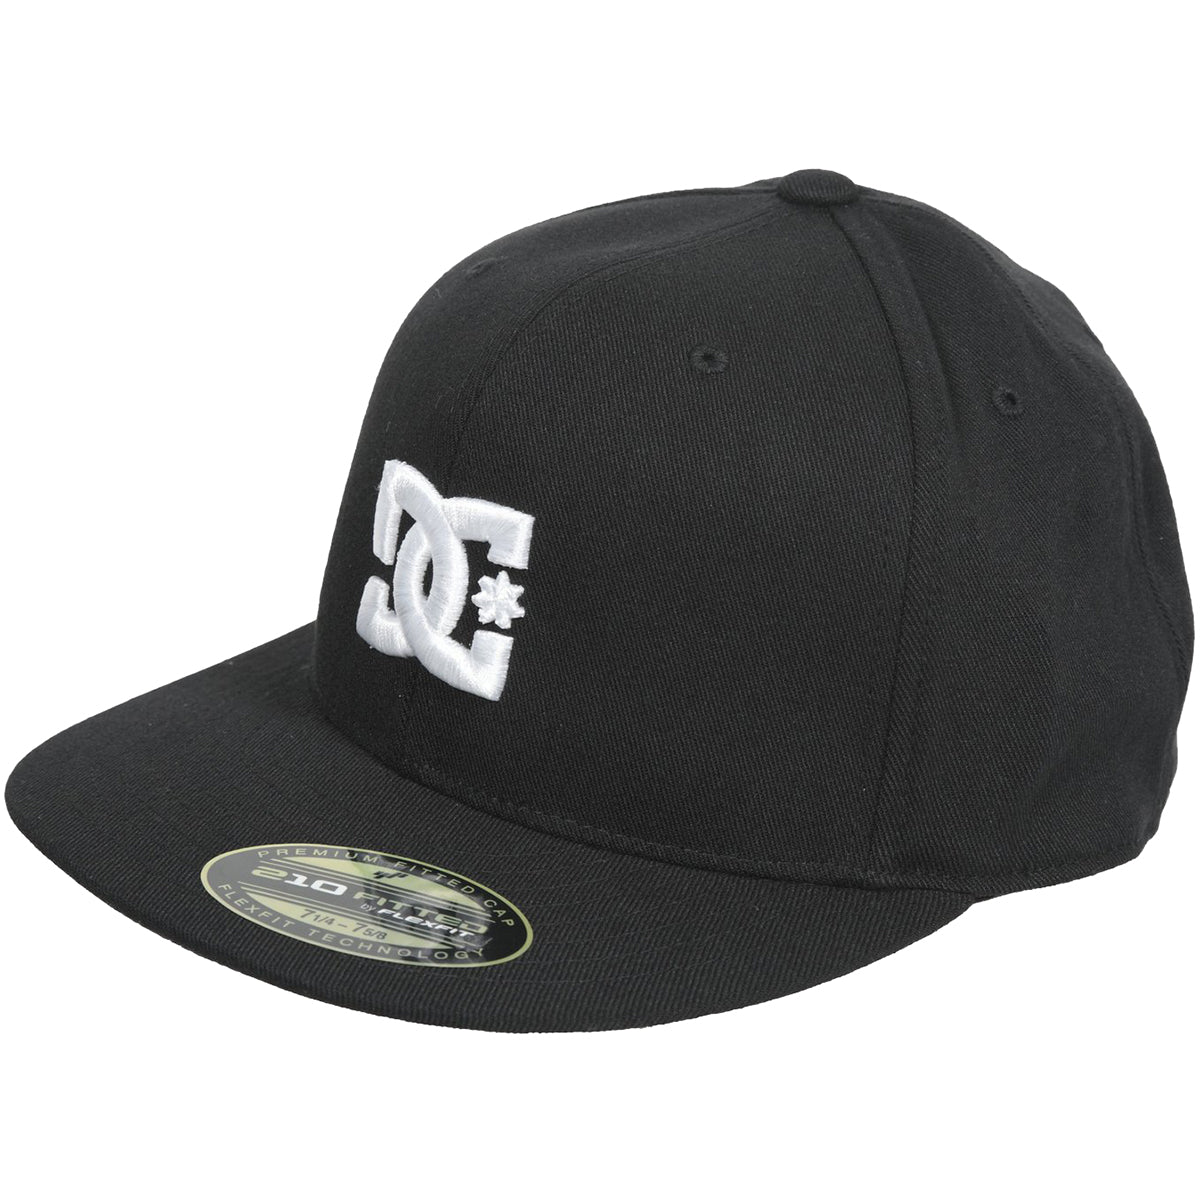 DC Take That Men's Flexfit Hats-53300119